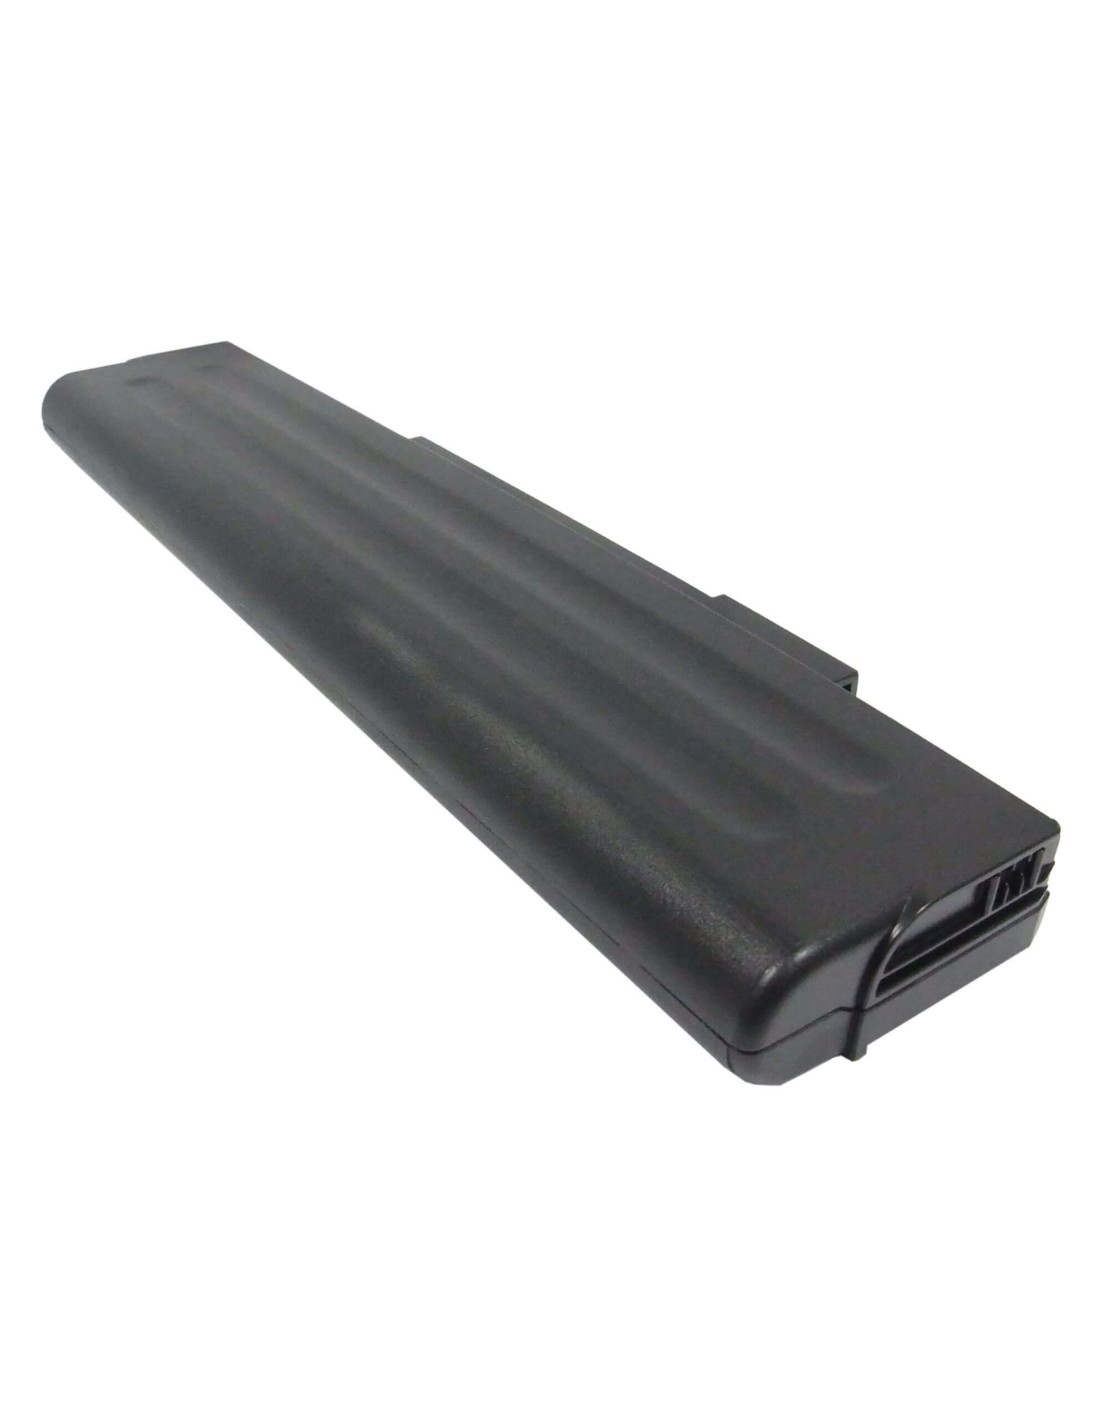 Black Battery for Gateway M360, M460, M680 14.8V, 6600mAh - 97.68Wh